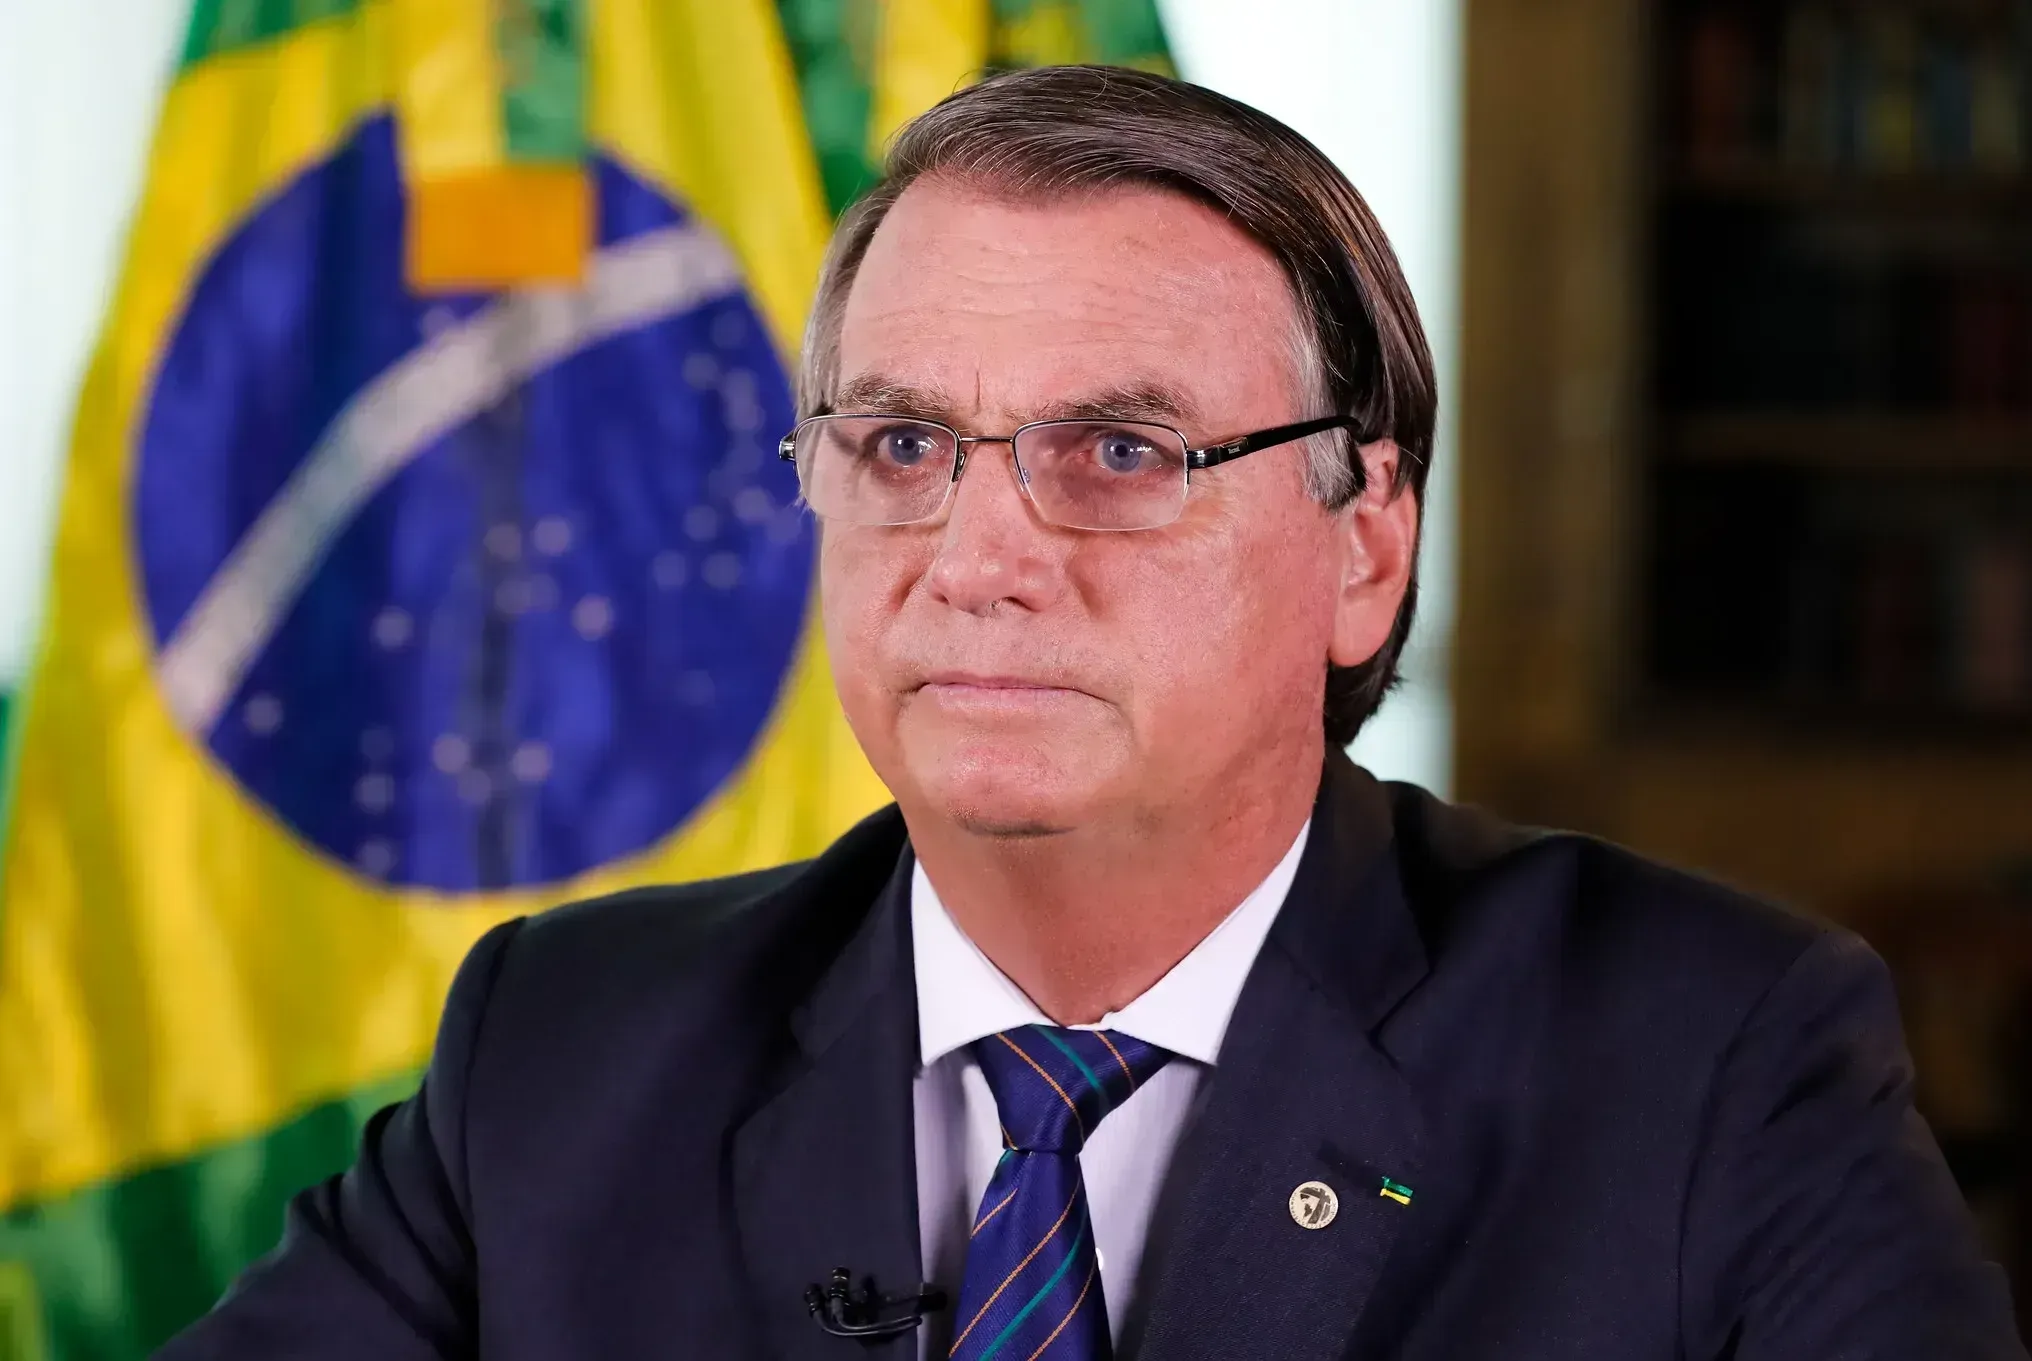 Bolsonaro participou do lançamento de um cabo de fibra óptica submerso em rios, por meio do Programa Norte Conectado